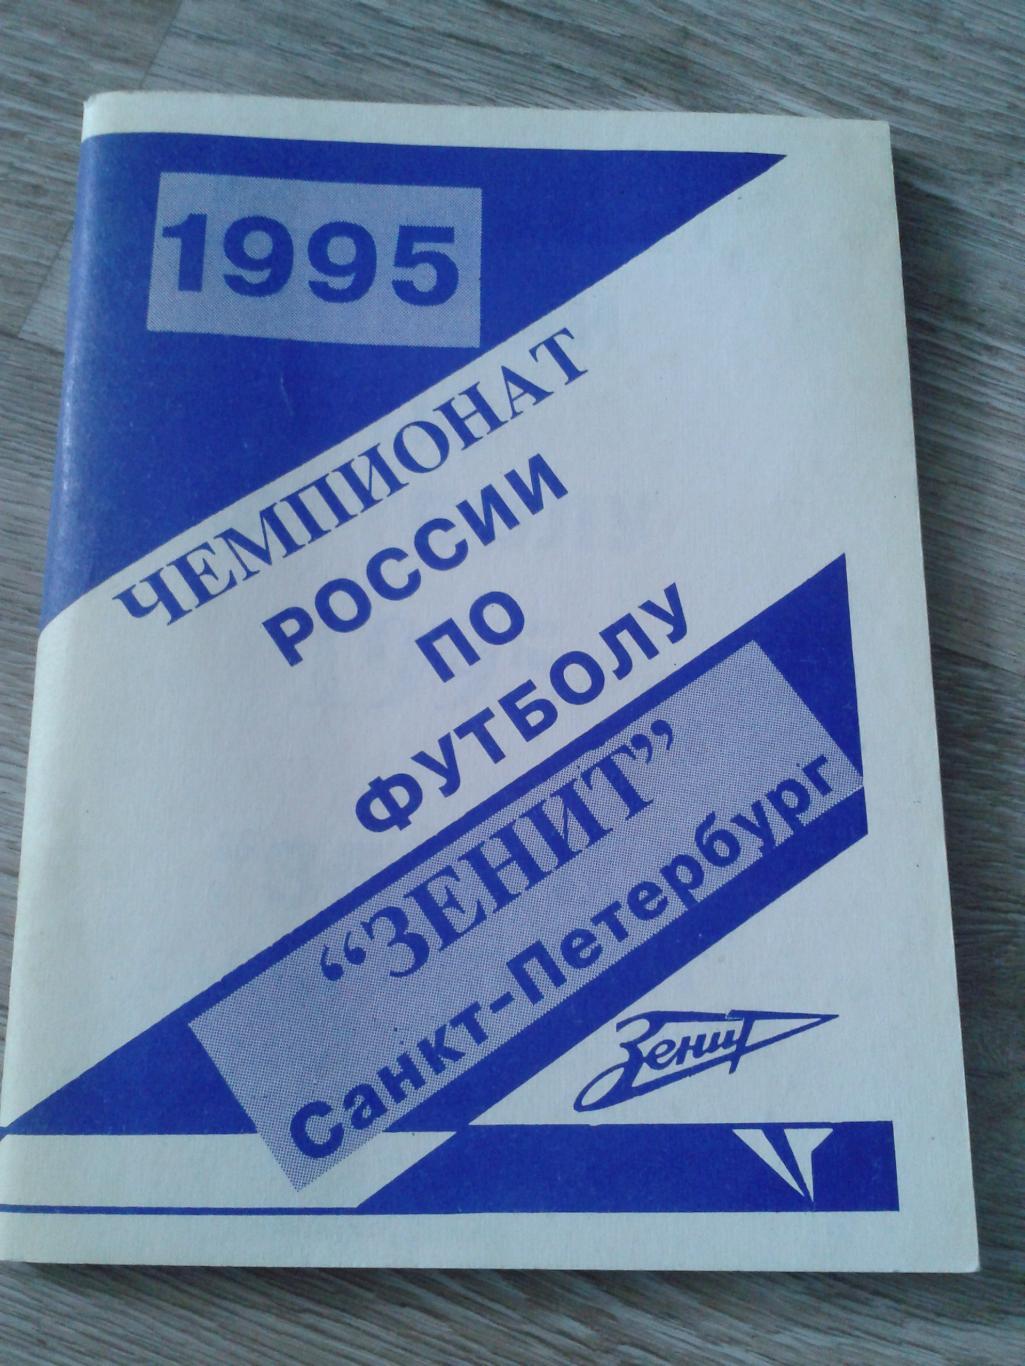 1995 Календарь-справочник Зенит Санкт-Петербург